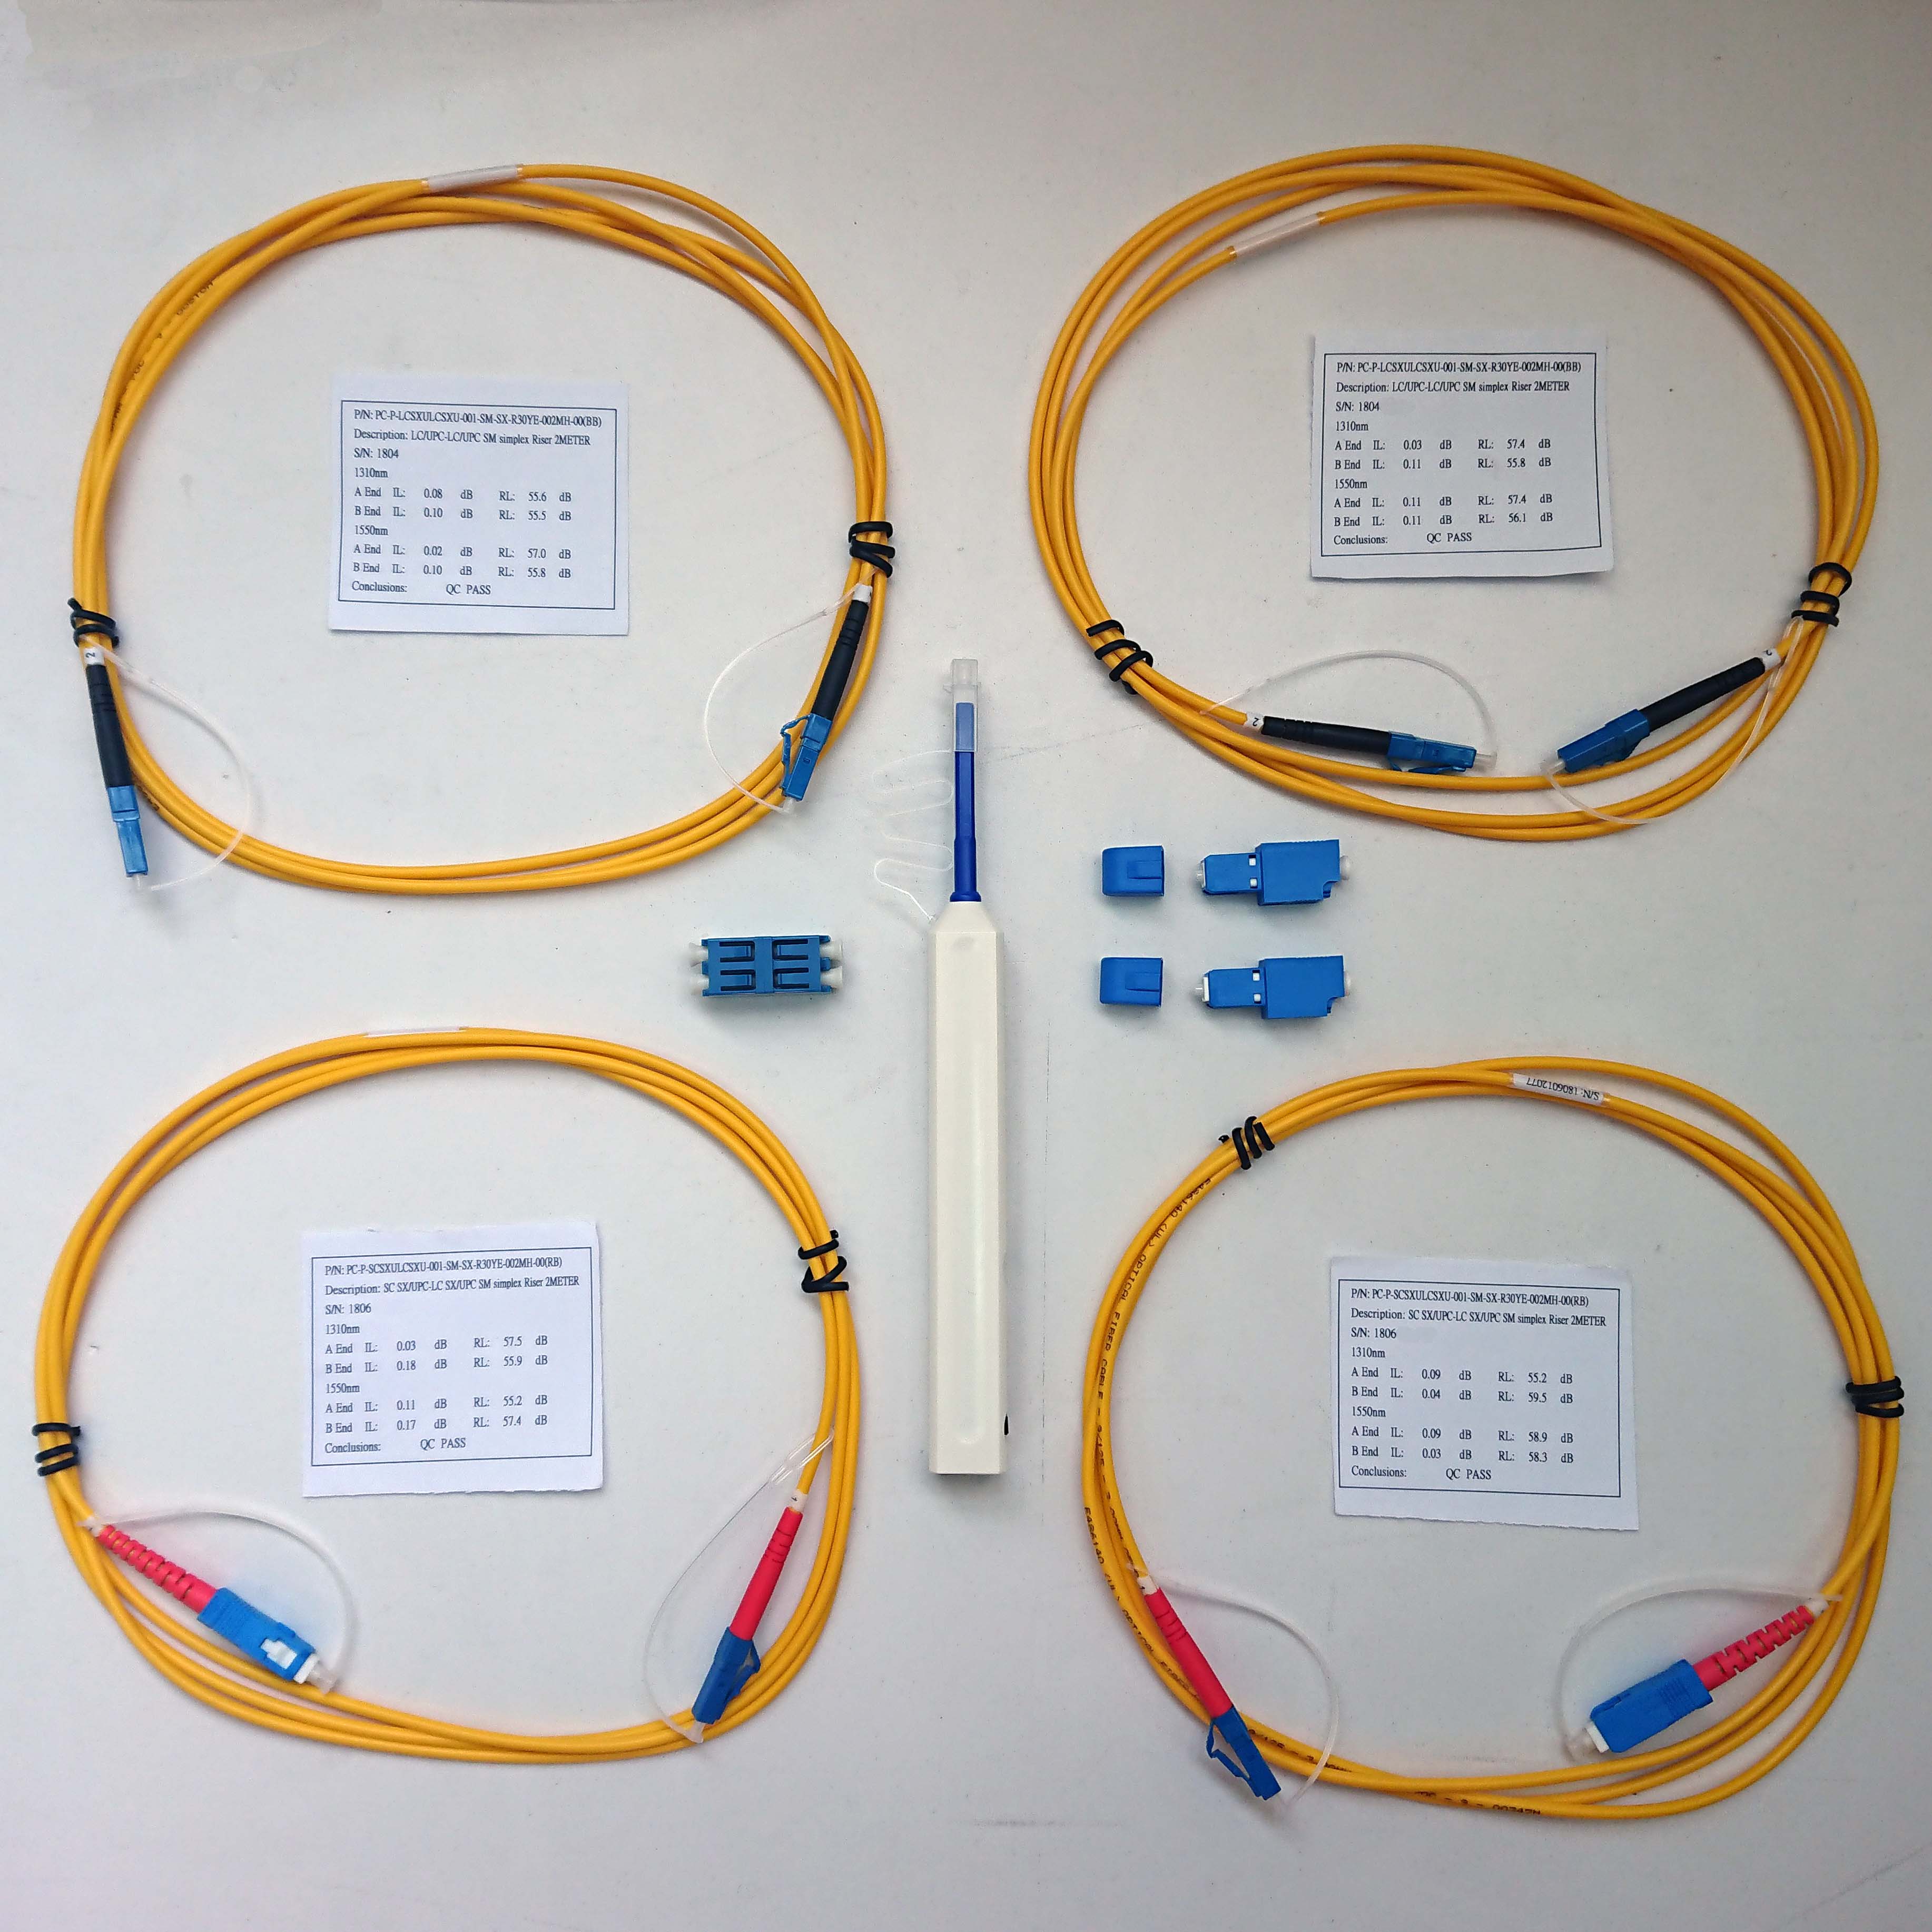 Одномодовый тестовый набор LC из пары SC-LC одинарных шнуров, пары SC-LC адаптеров, пары LC-LC эталонных шнуров